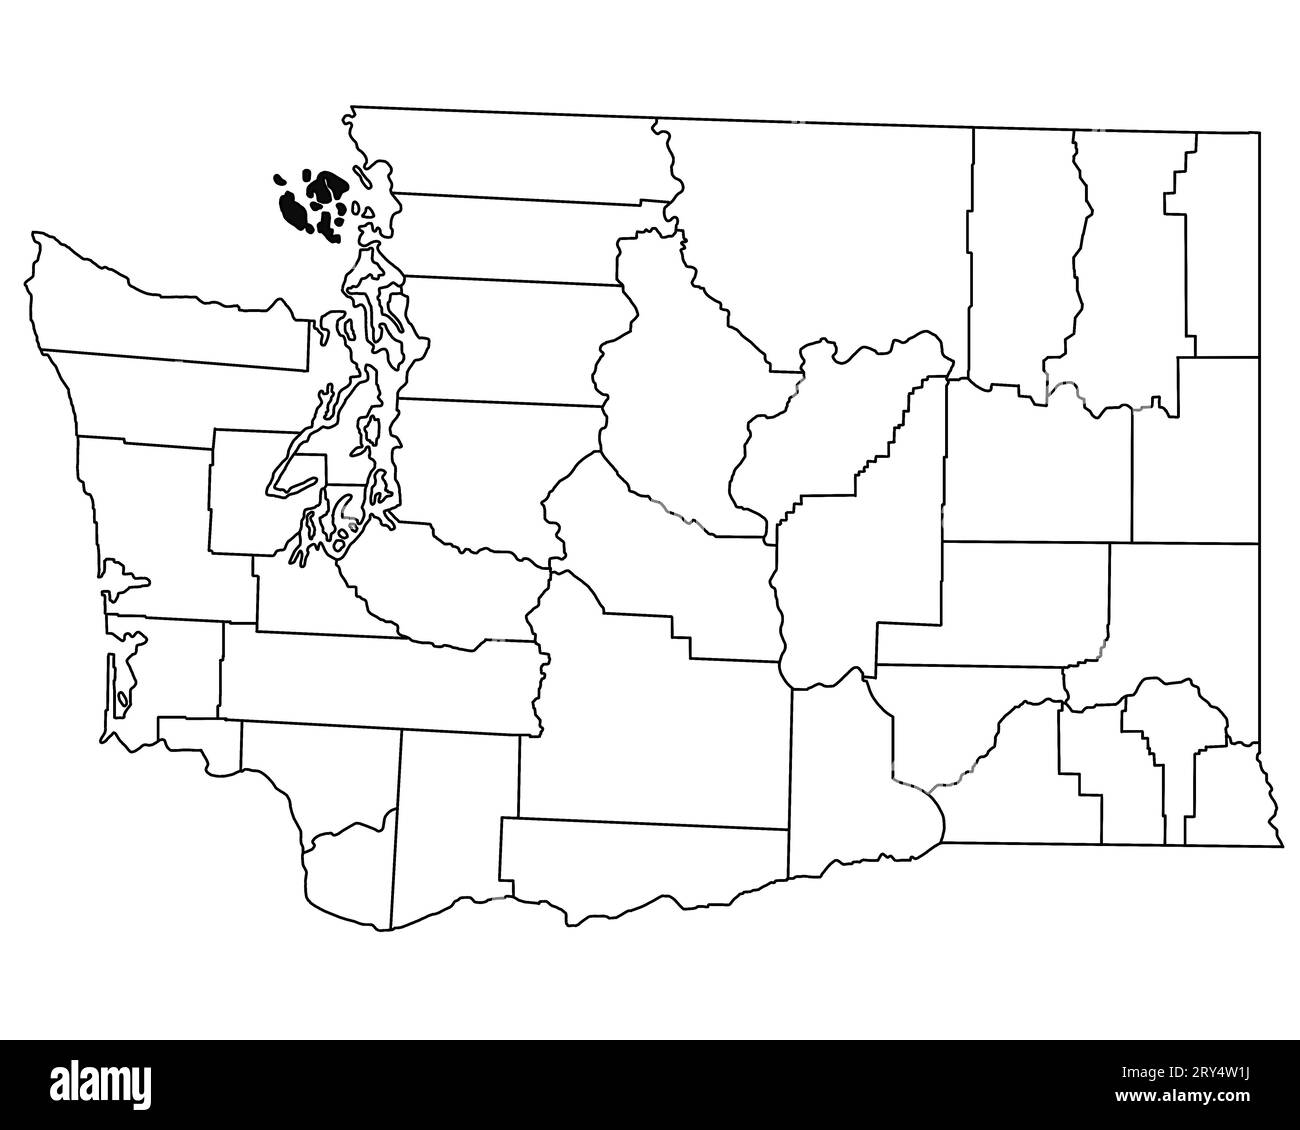 Carte du comté de San Juan dans l'état de Washington DC sur fond blanc. Carte de Single County surlignée en noir sur la carte DE WASHINGTON. ÉTATS-UNIS, ÉTATS-UNIS Banque D'Images